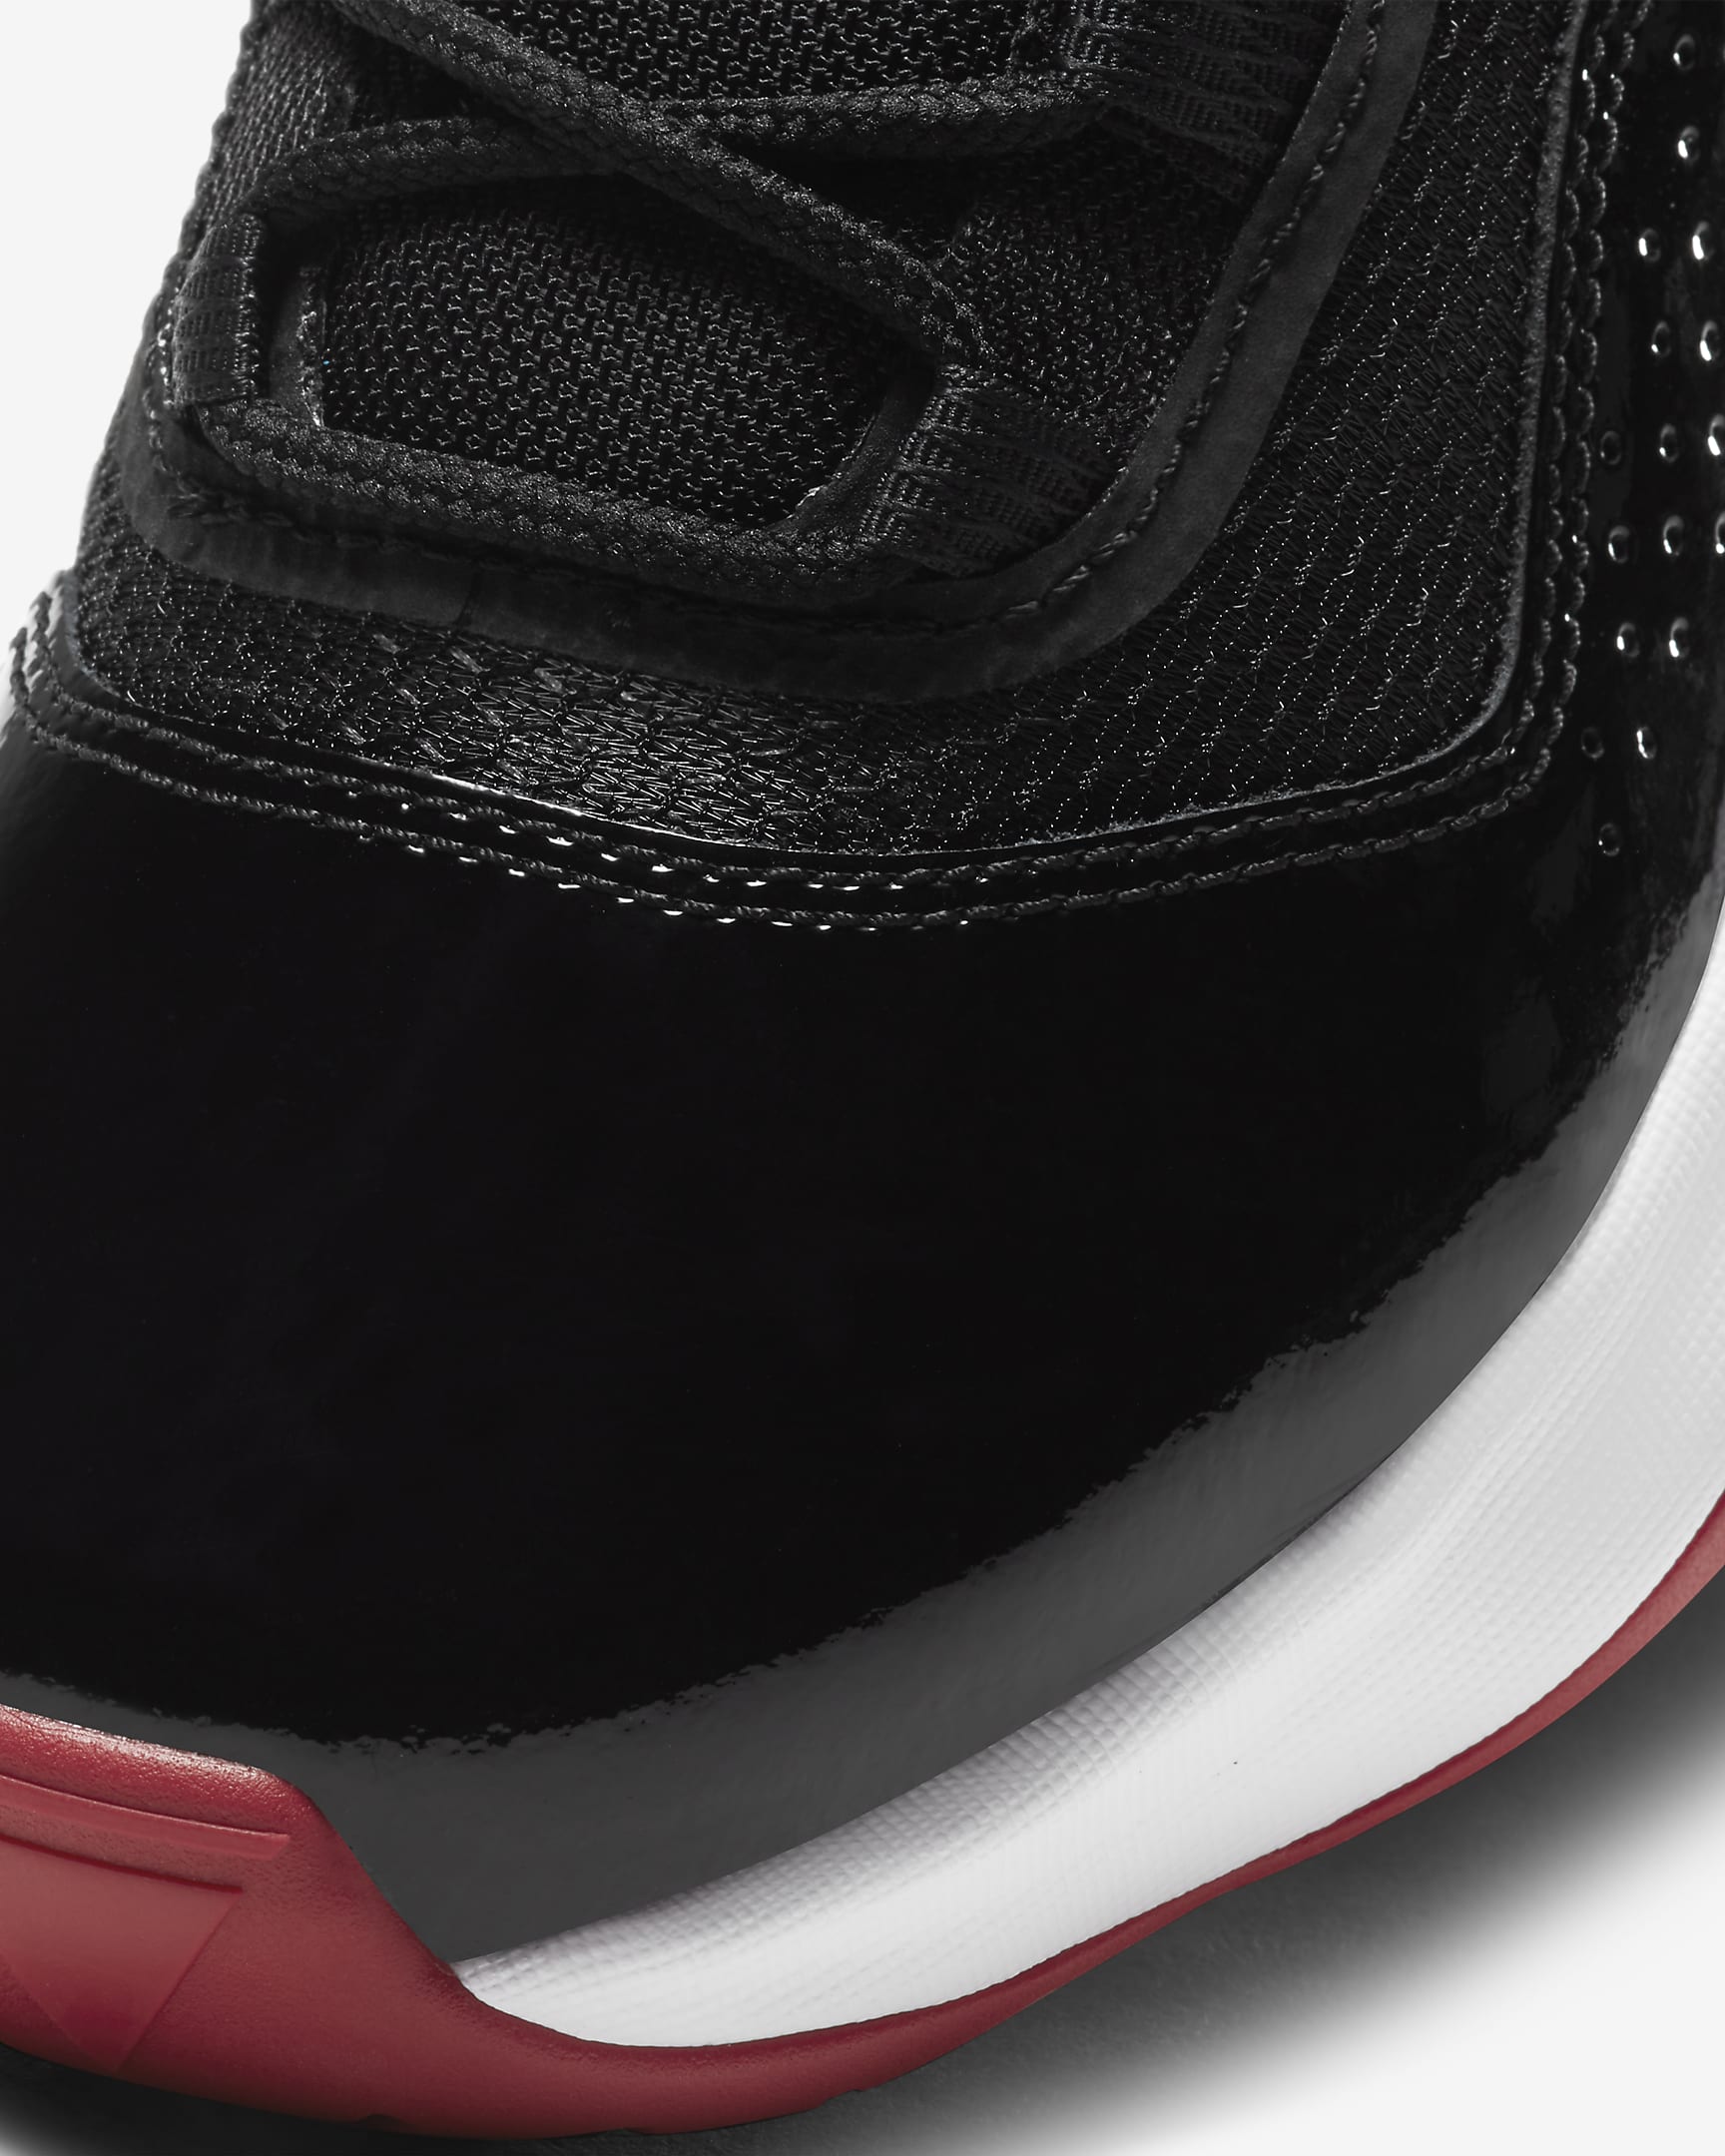 Air Jordan 11 CMFT Low Older Kids' Shoe. Nike FI